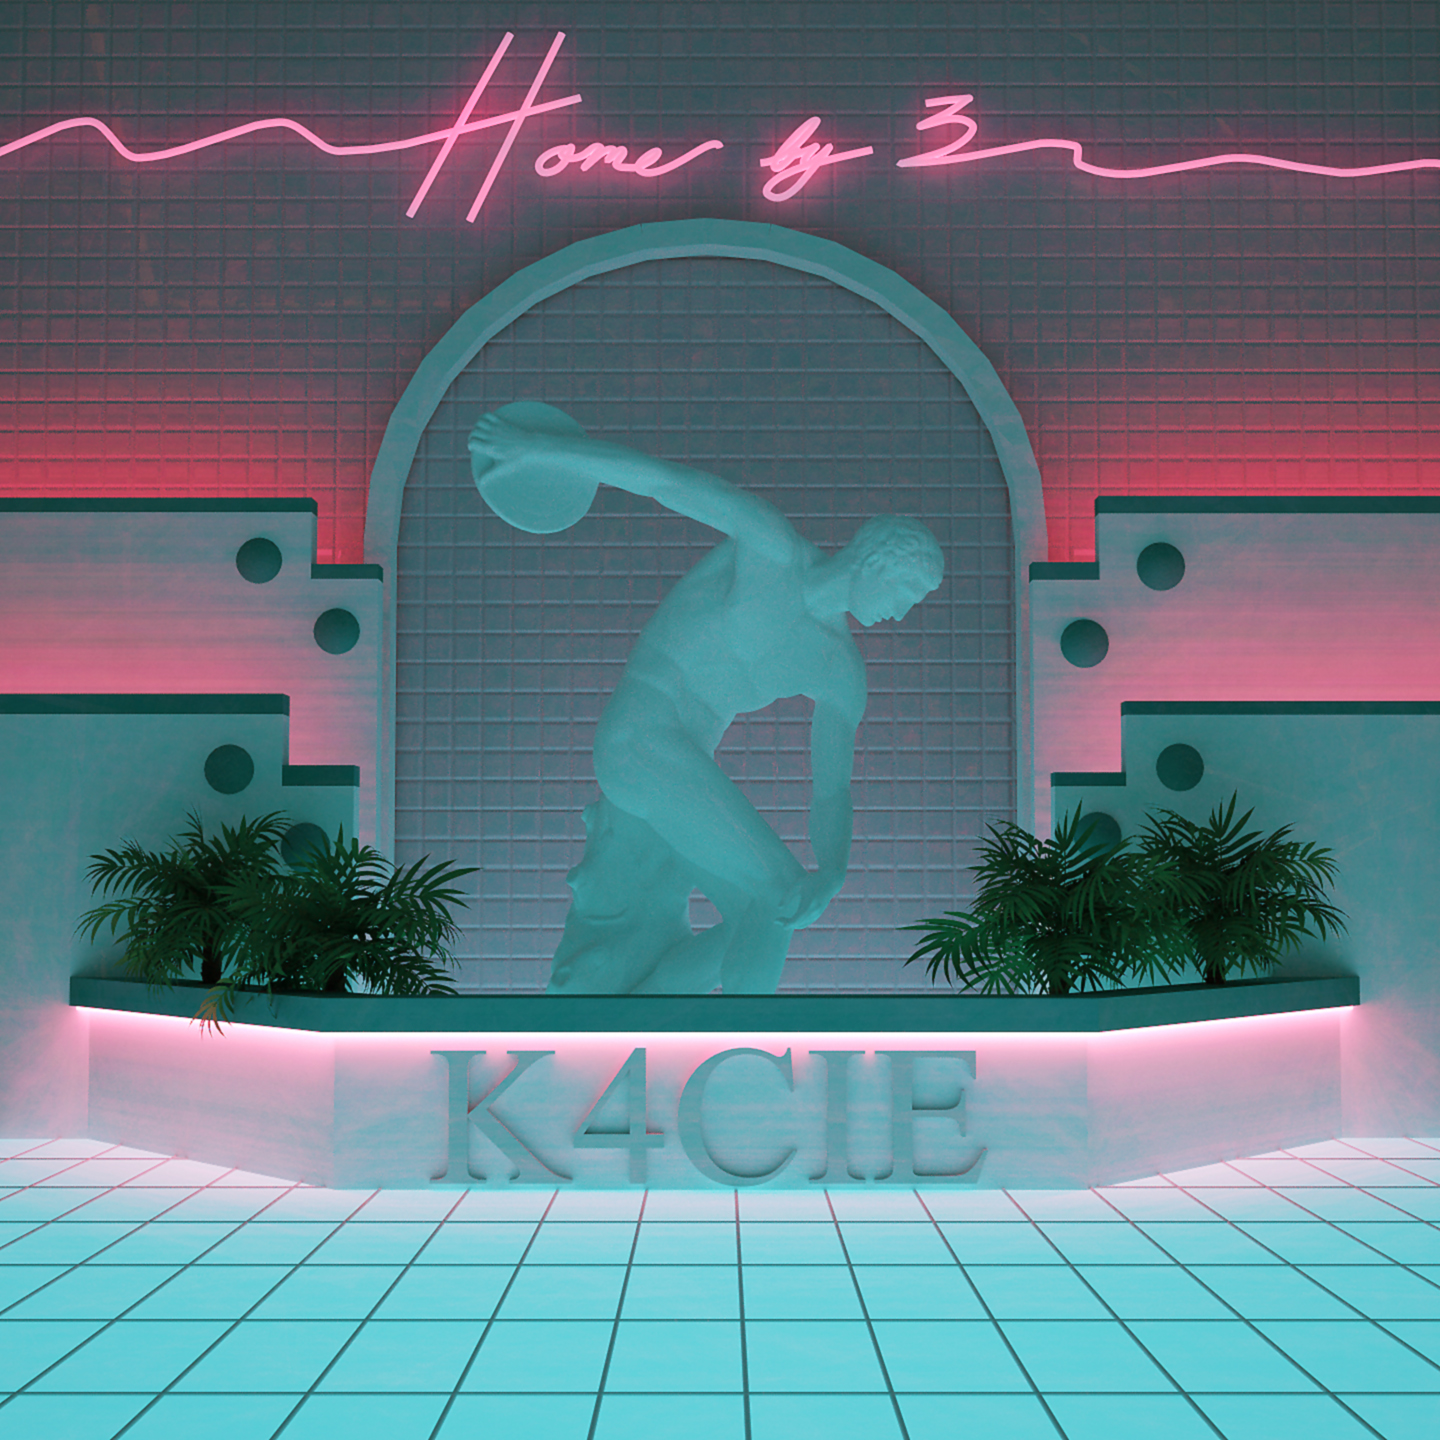 K4CIE - HOME BY 3.jpg